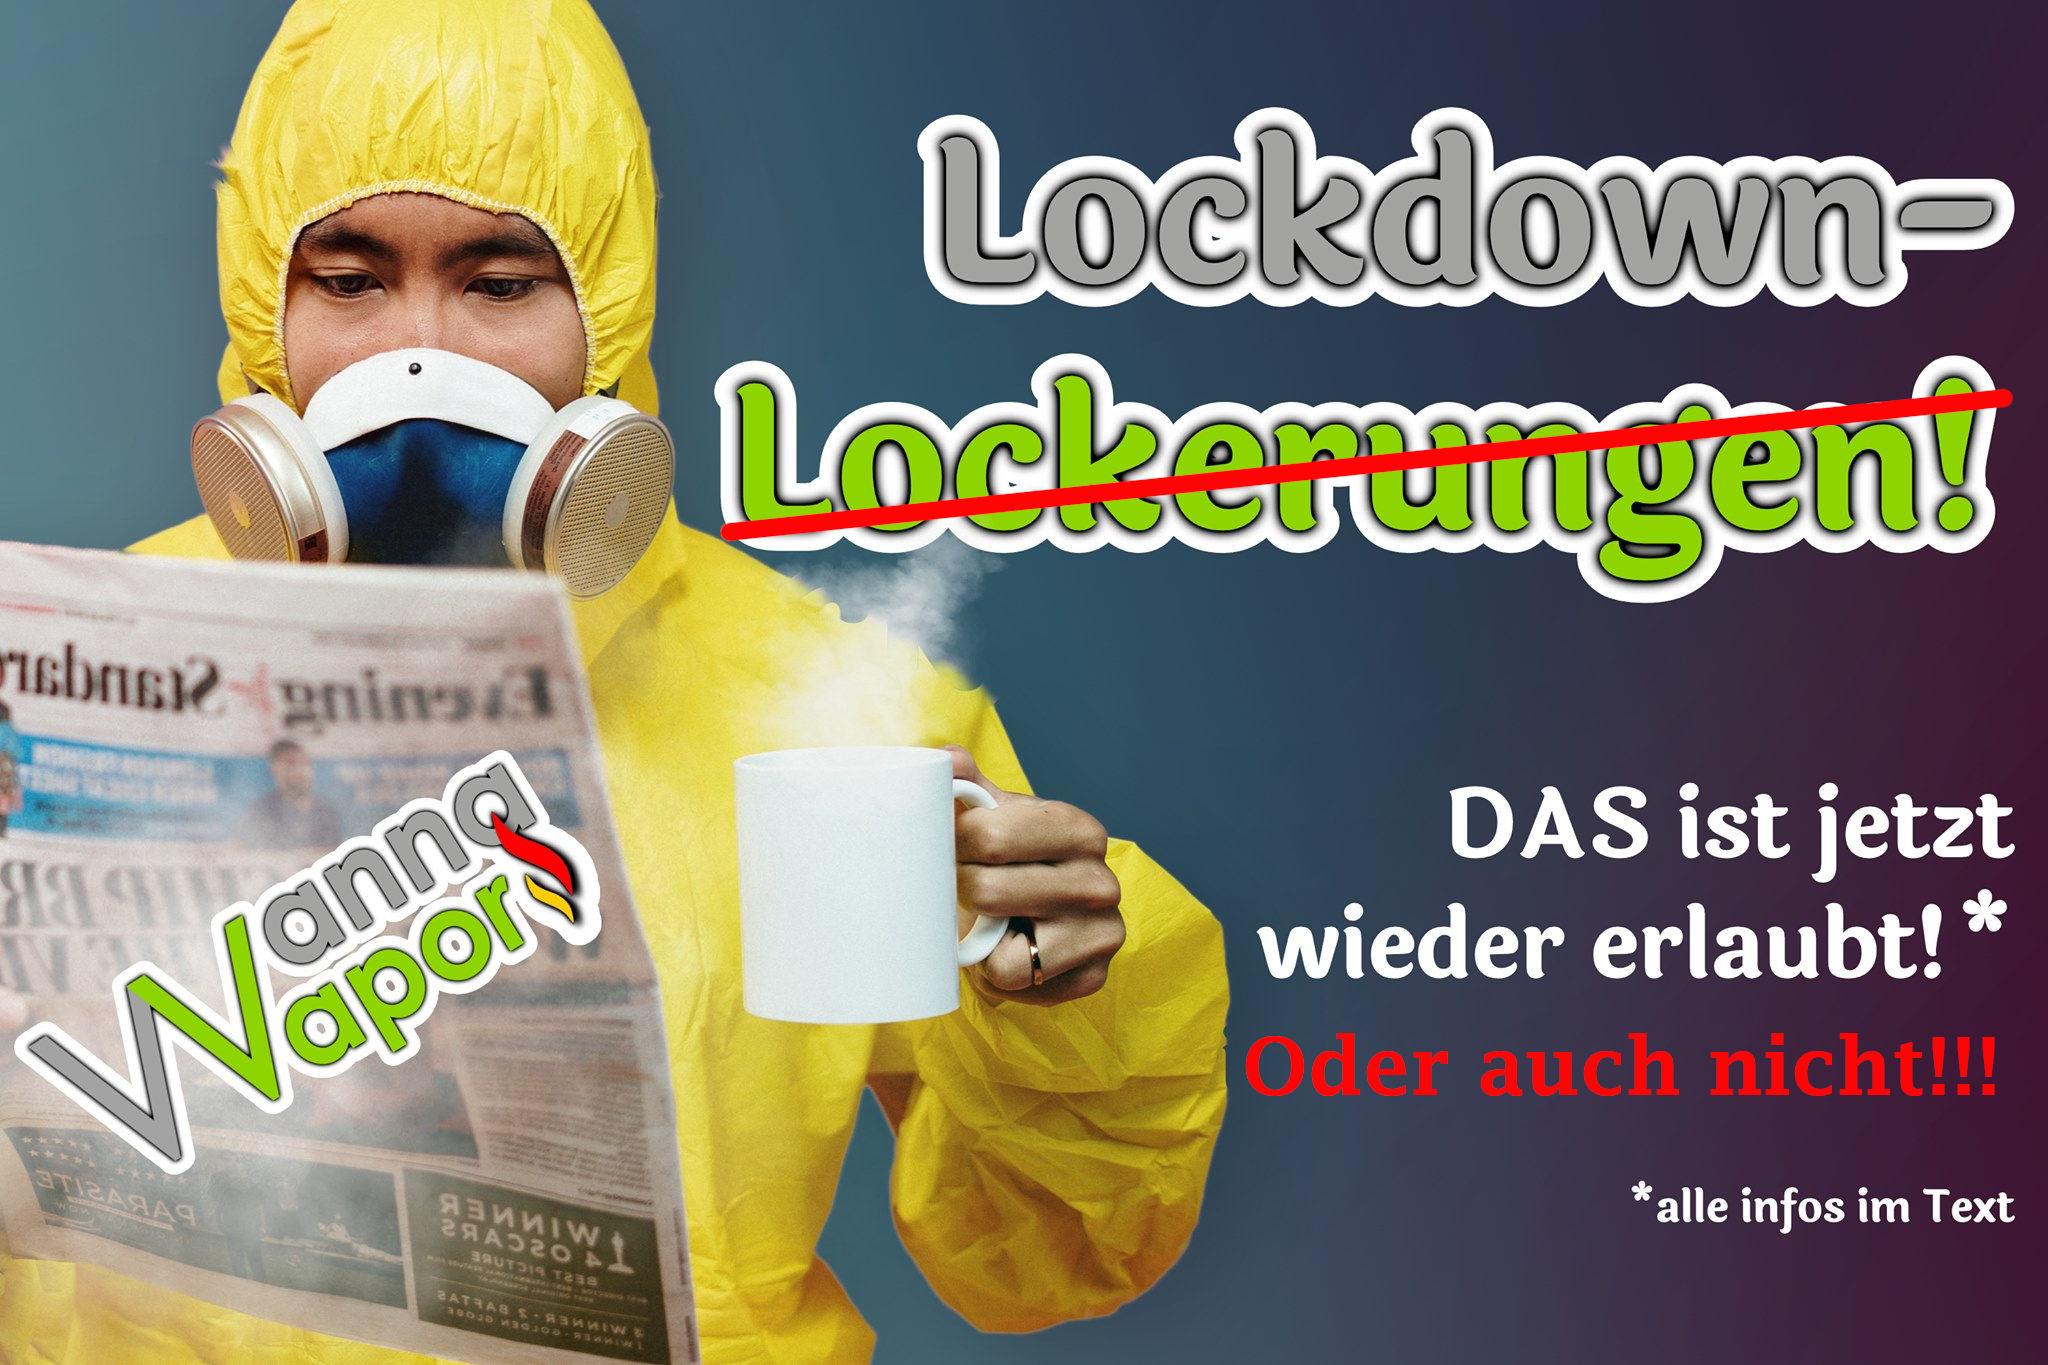 LockdownLockerung